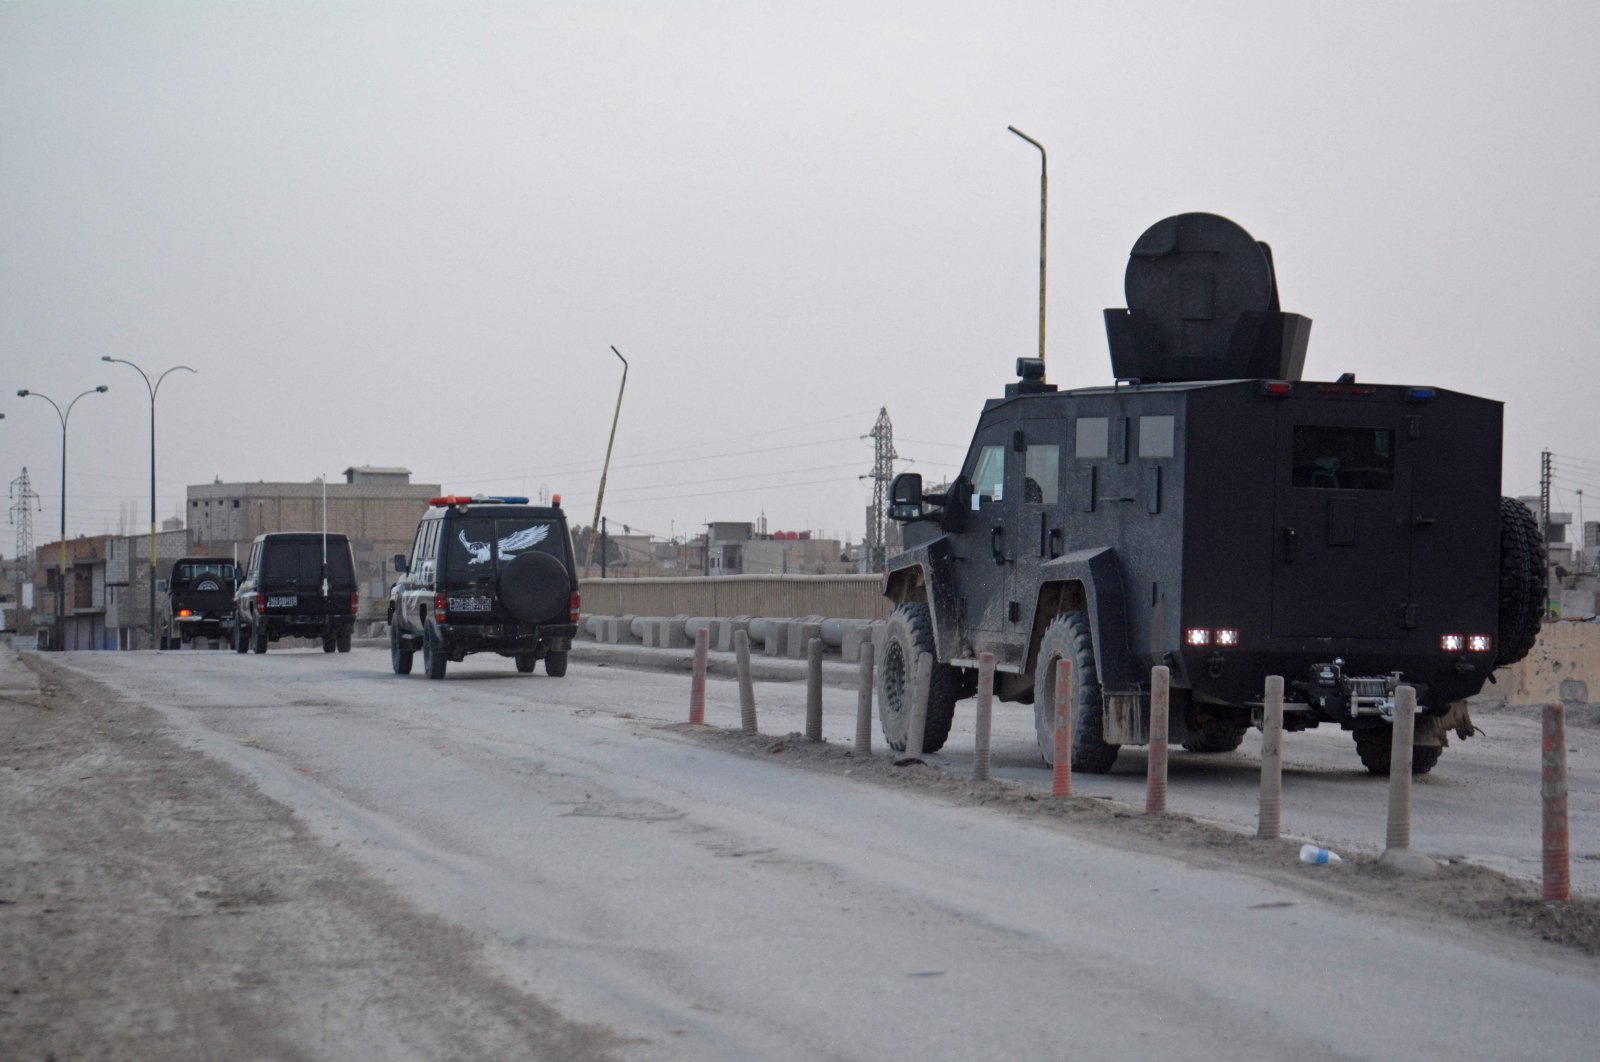 Kebuntuan Daesh, YPG berlanjut pada hari ke-4 bentrokan